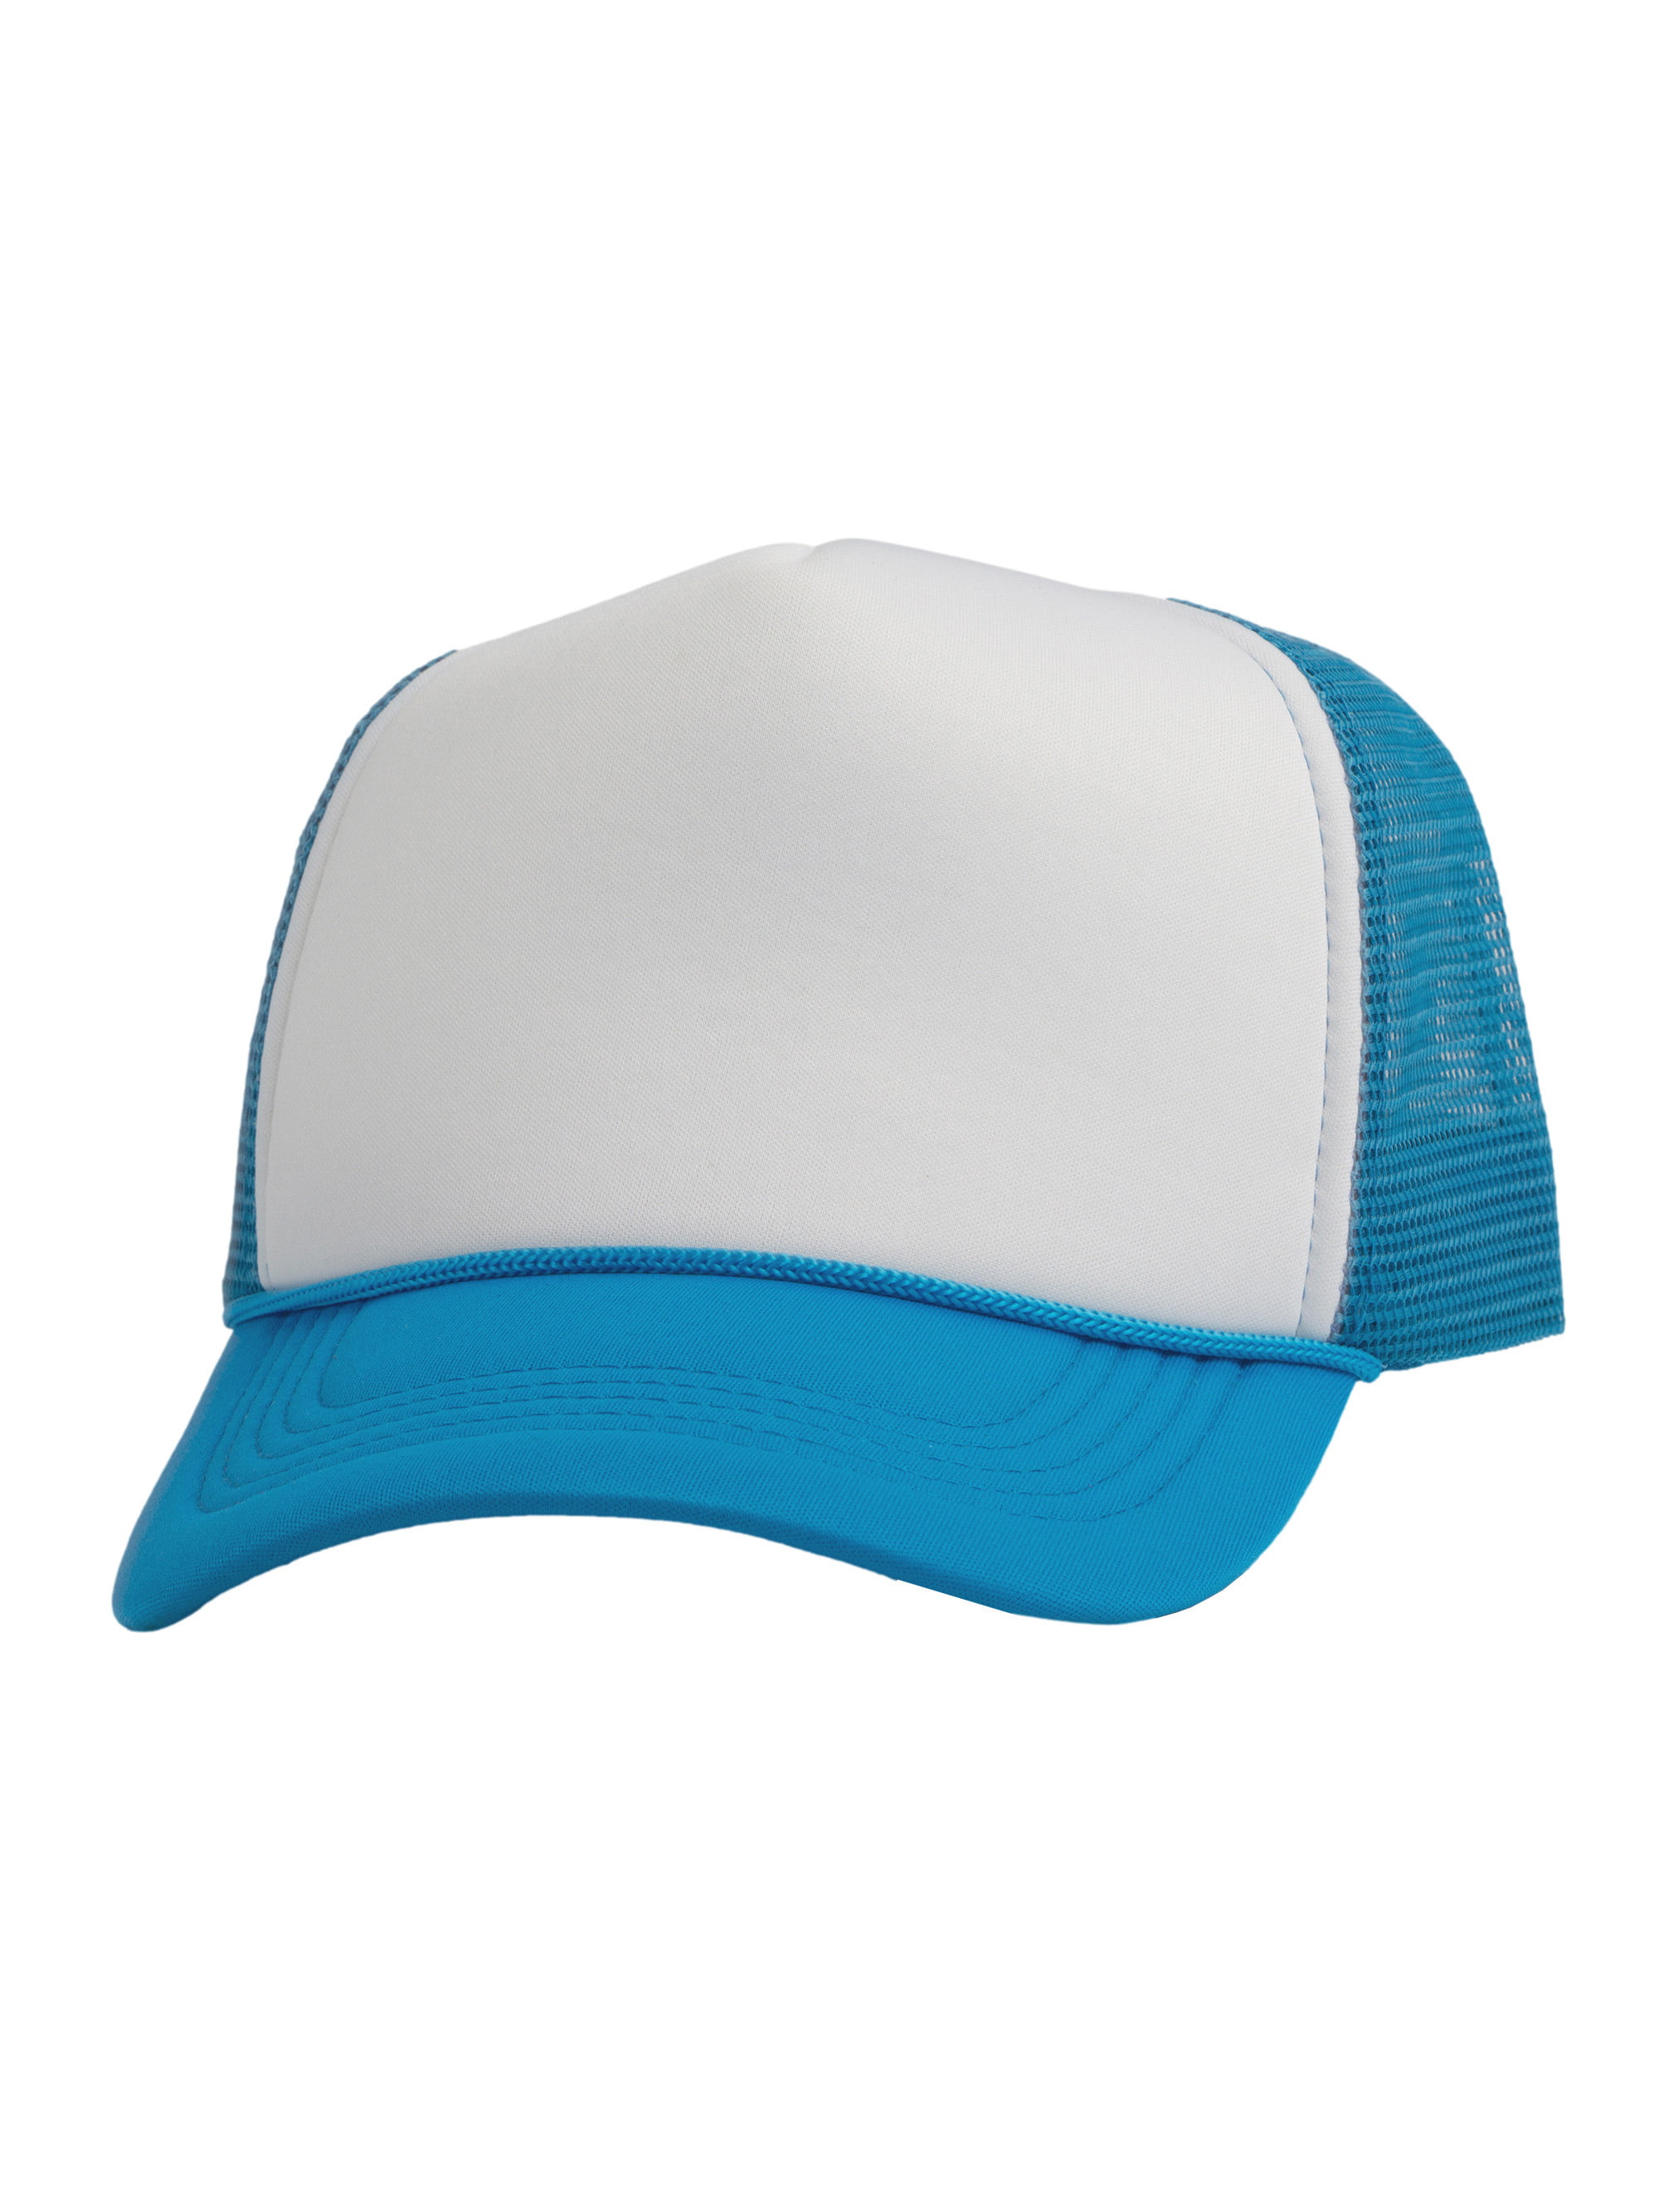 Top Headwear Blank Trucker Hat - Mens Trucker Hats Foam Mesh Snapback  White/Purple 